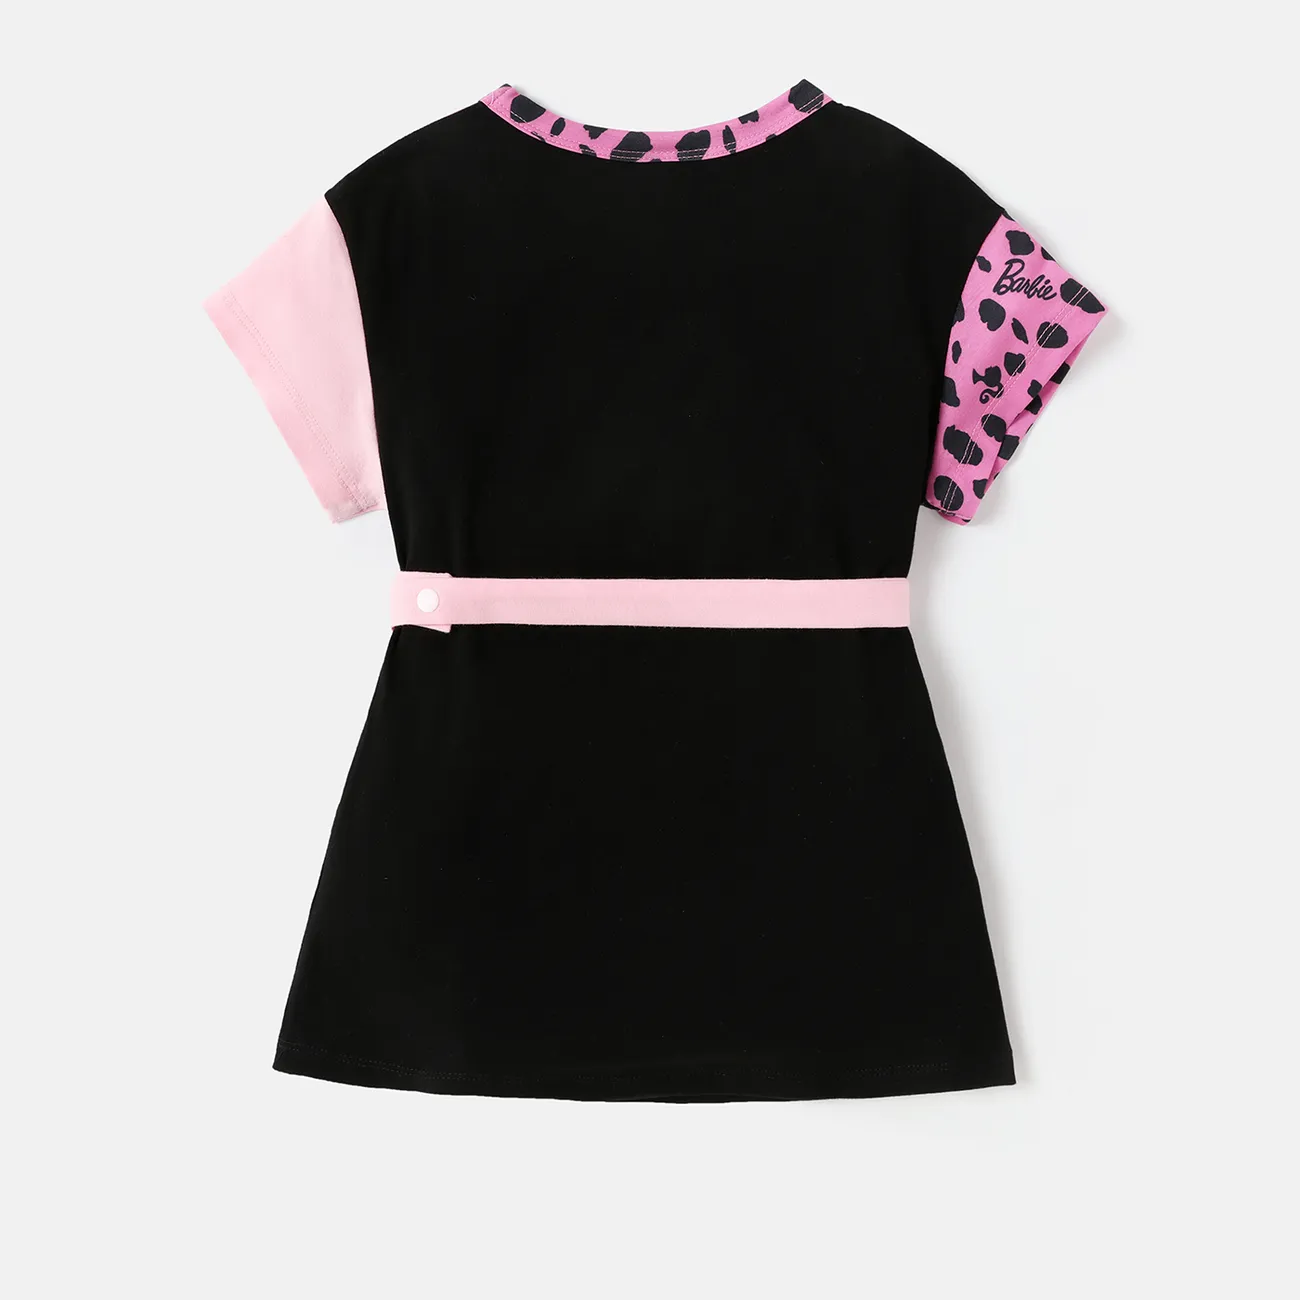 Barbie Kleinkind / Kind Mädchen Leopard / Colorblock Print Naia™ Kurzarmkleid mit Bauchtasche Farbblock big image 1